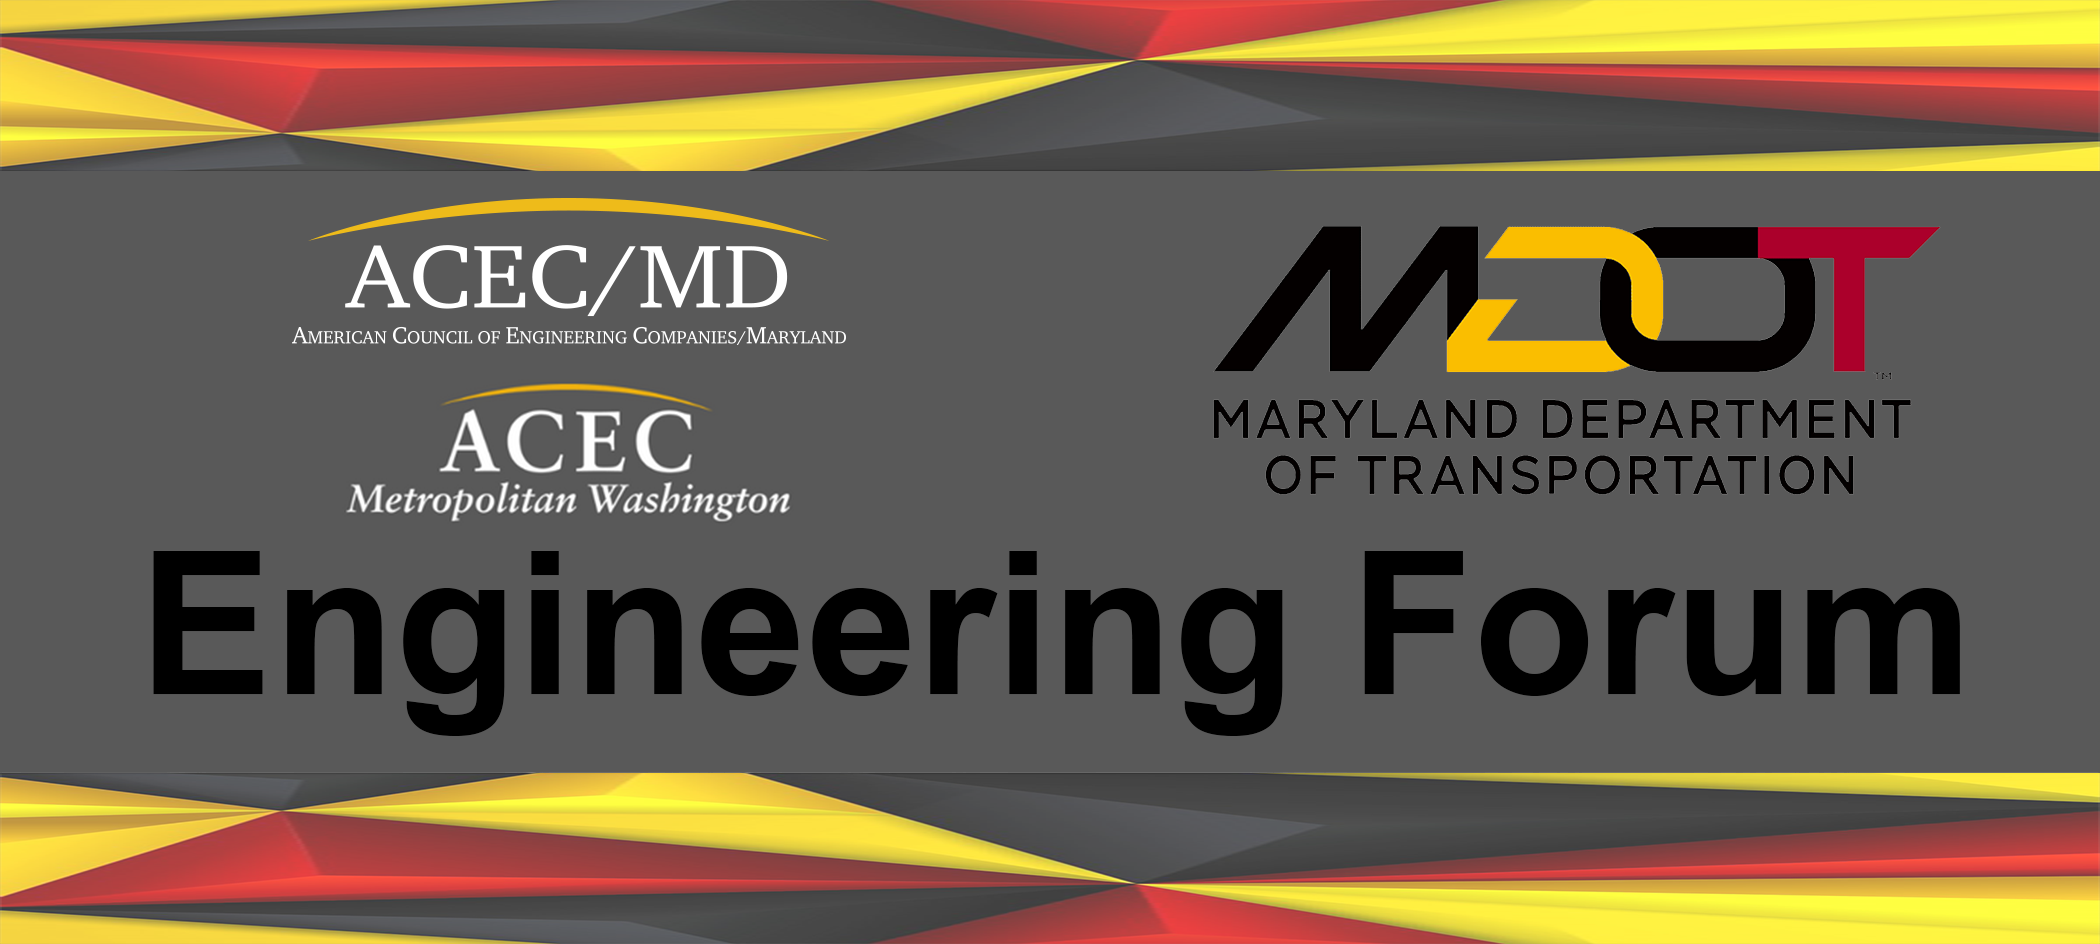 Bezwaar Hesje niet verwant 2023 ACEC & MDOT Engineering Forum - ACEC/MD